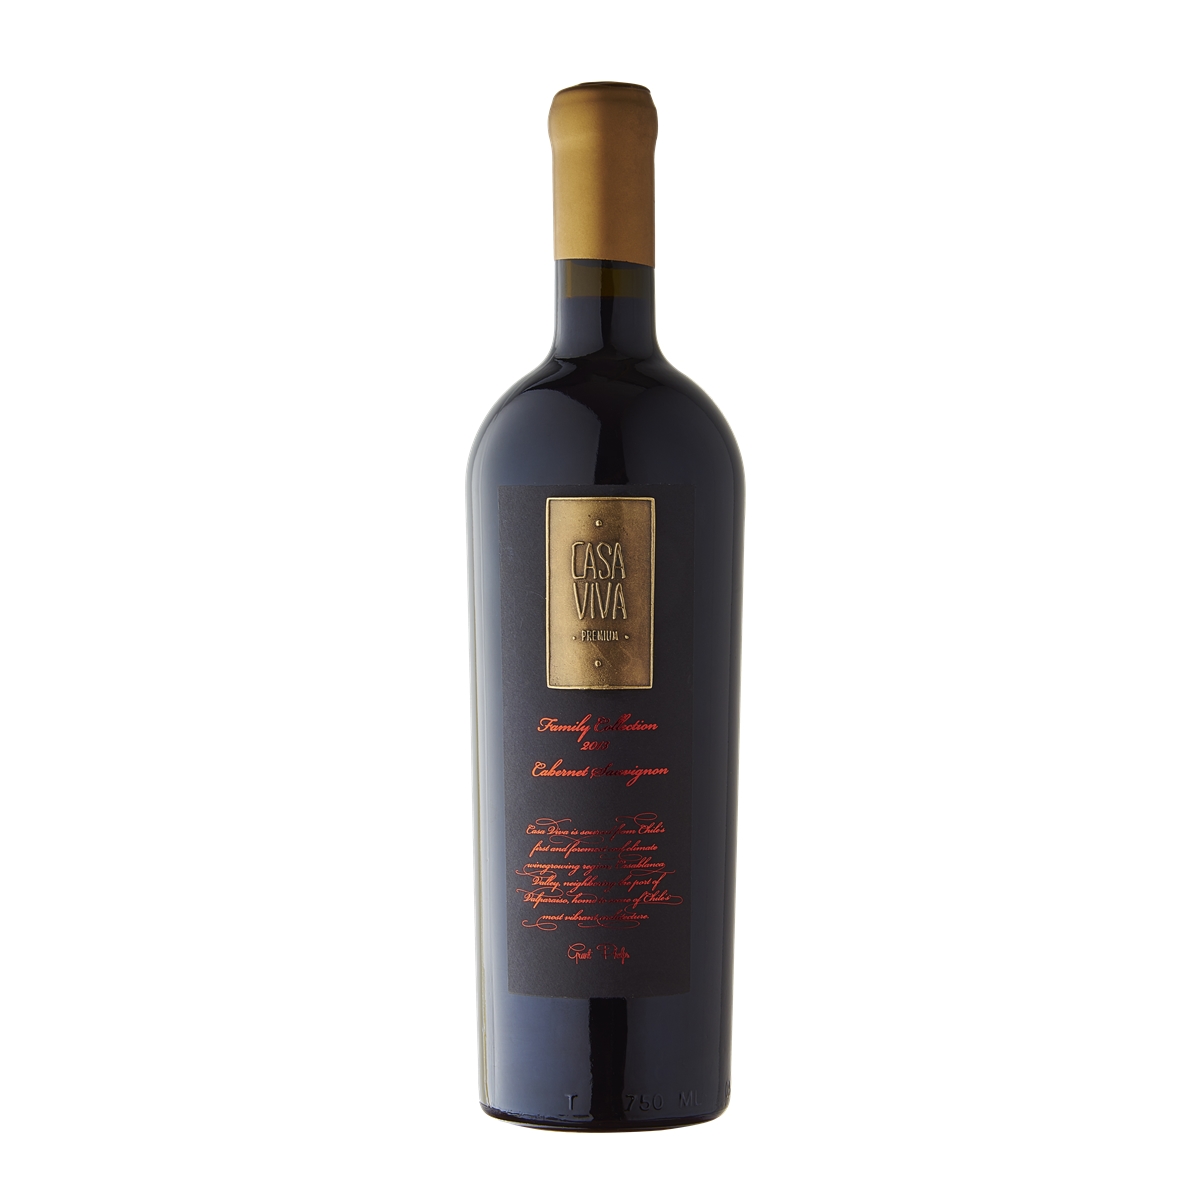 智利兰佩谷卡萨天堂赤霞珠家族珍藏干红葡萄酒